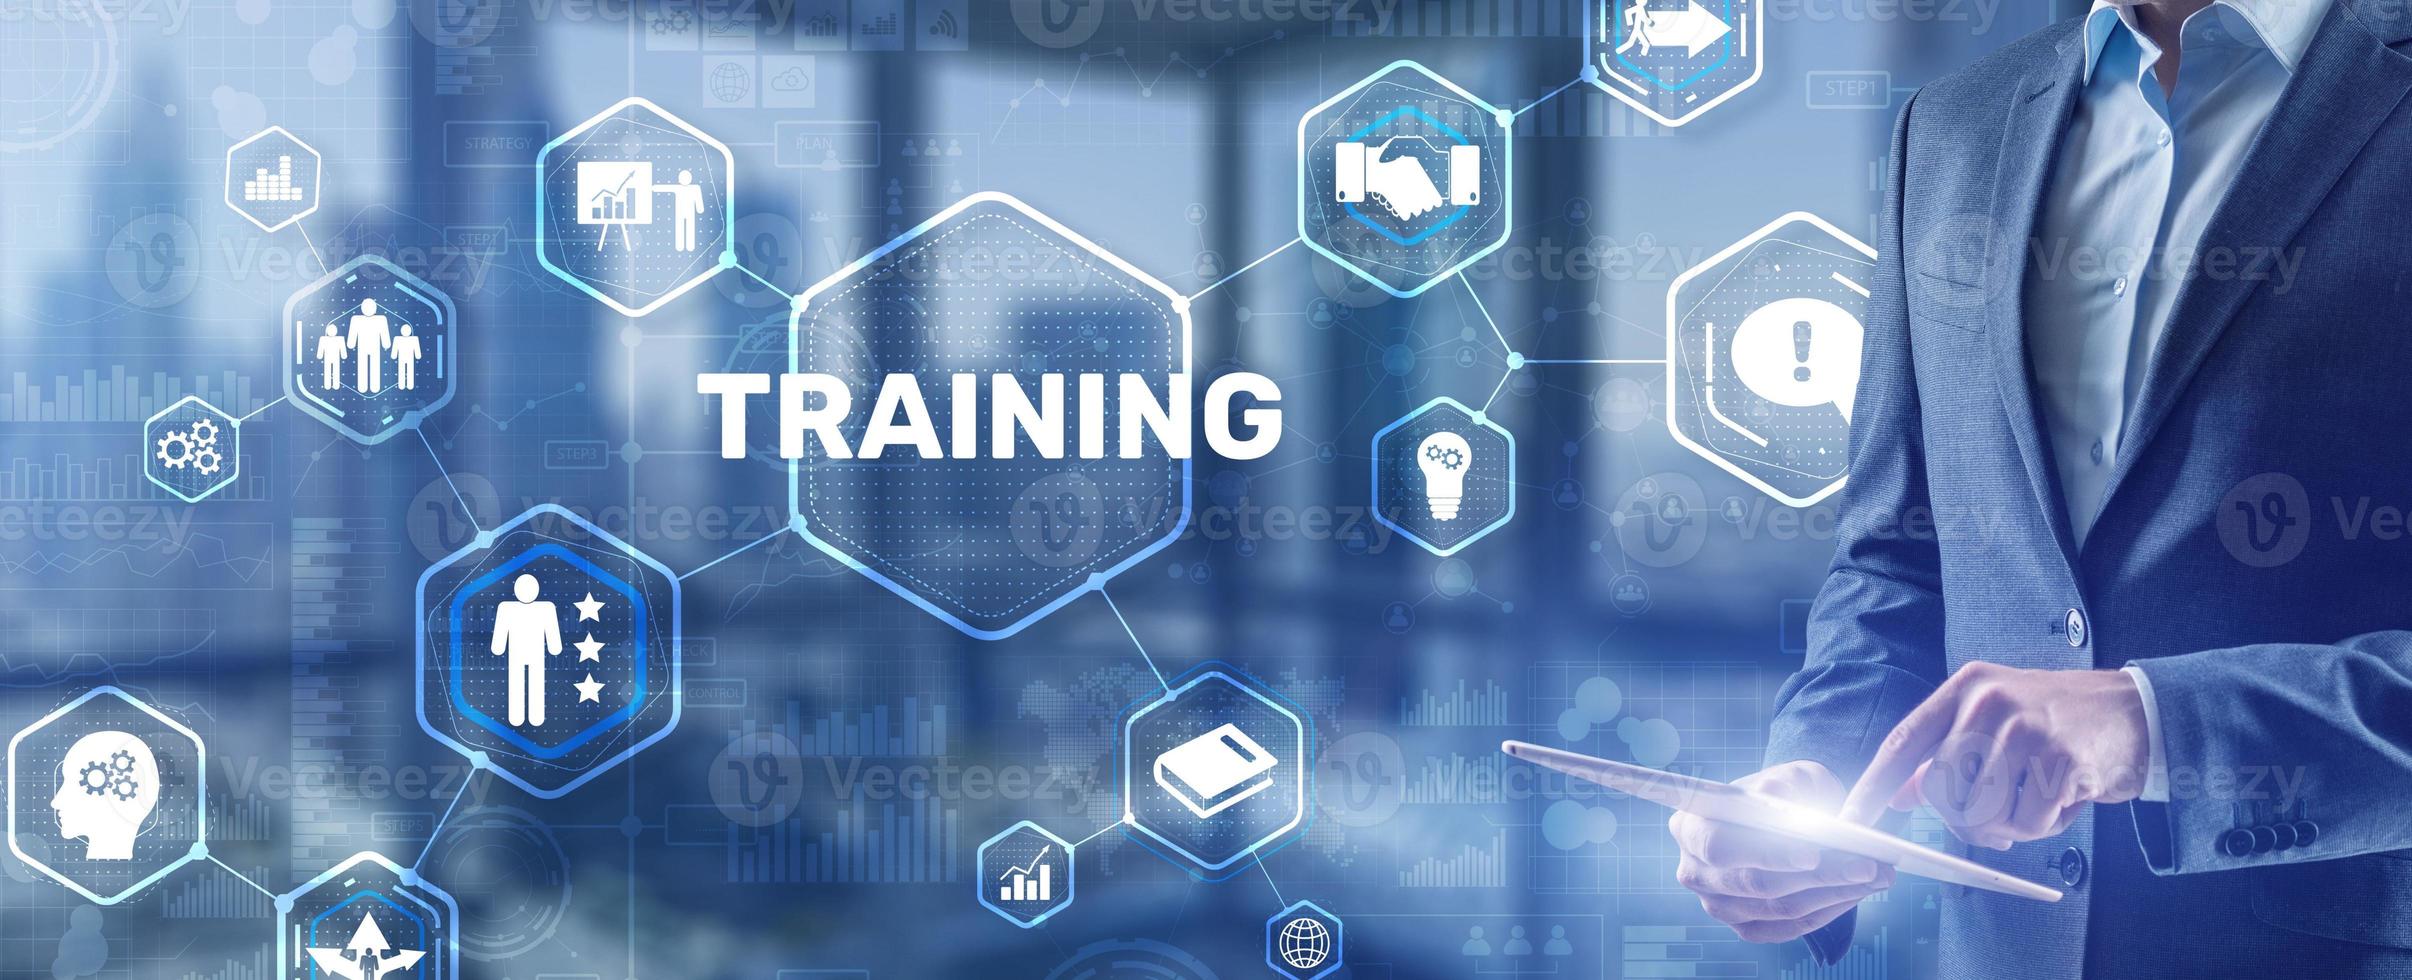 e-learning de treinamento por webinar. tecnologia financeira e conceito de comunicação foto